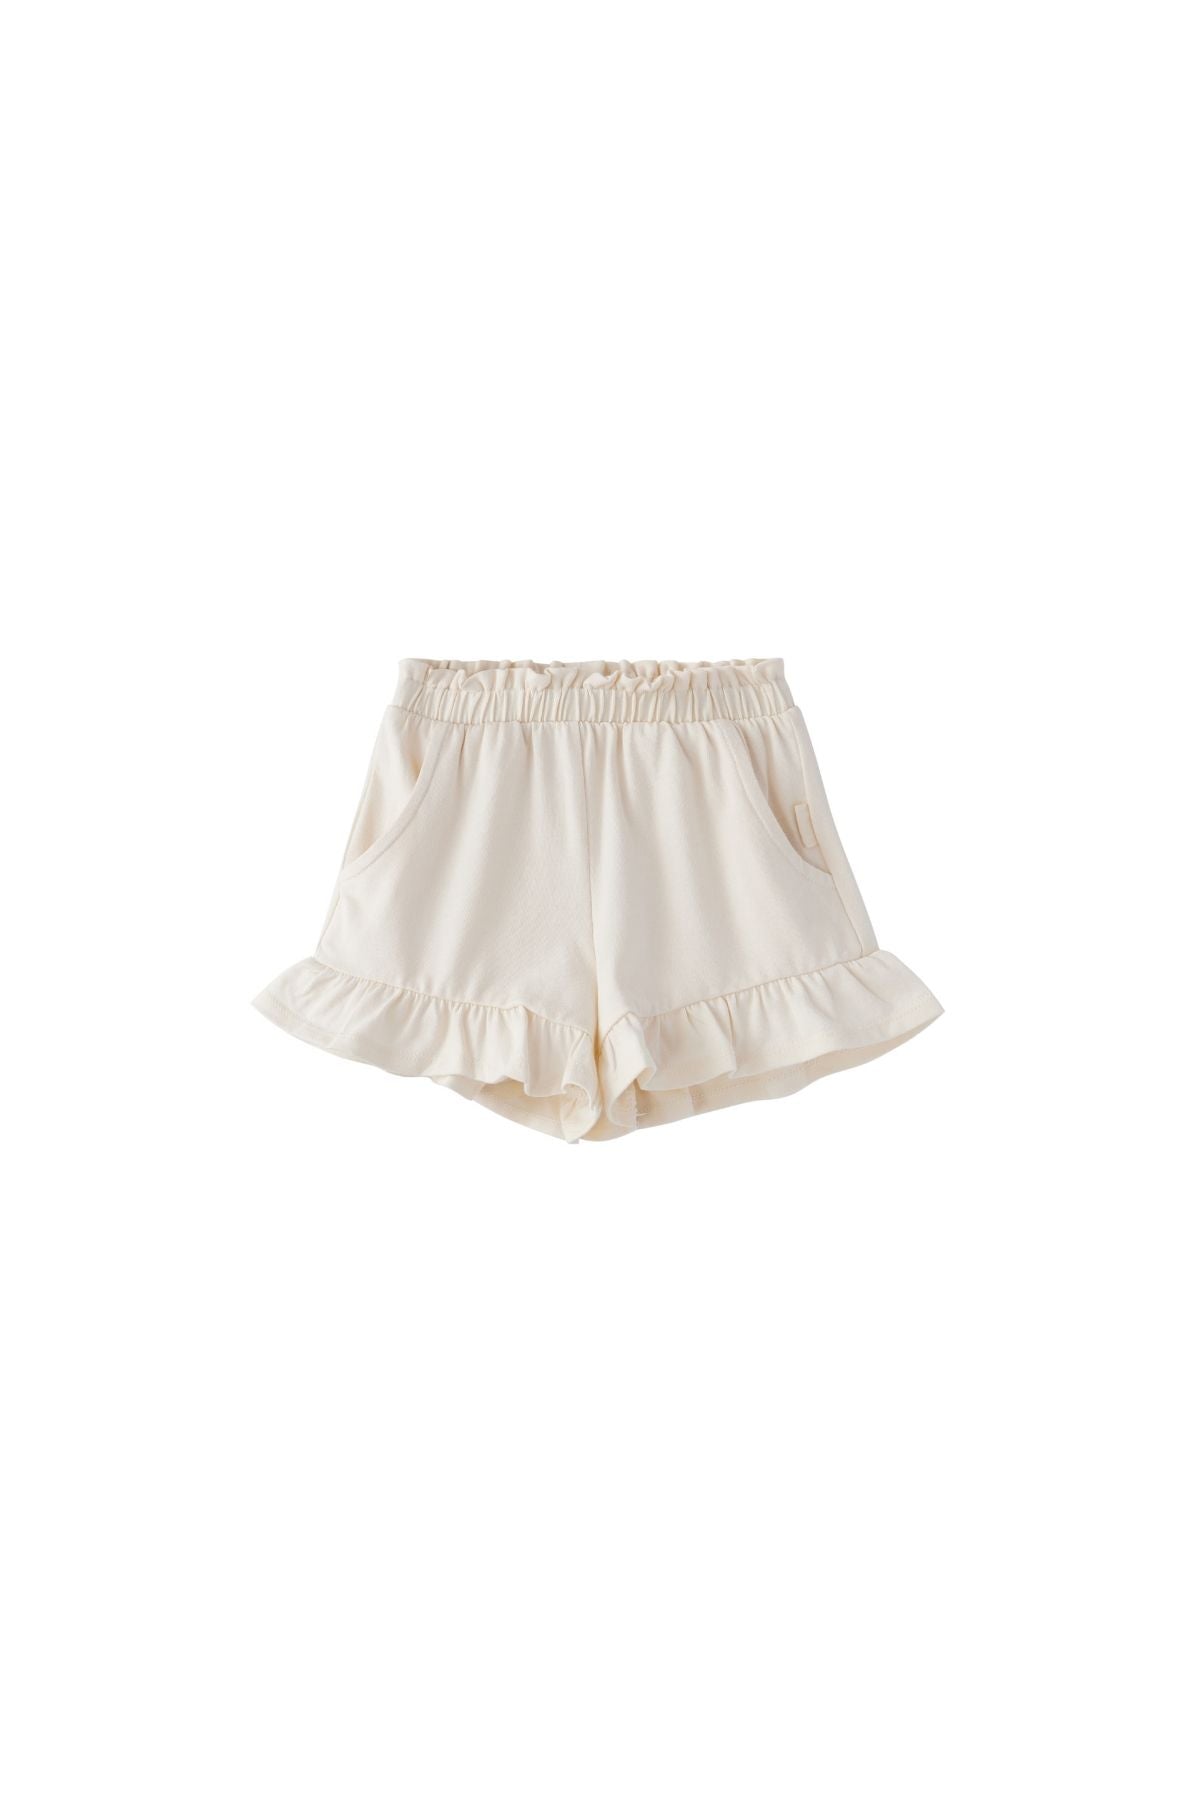 image for Organic Ruffle Shorts-Antique White